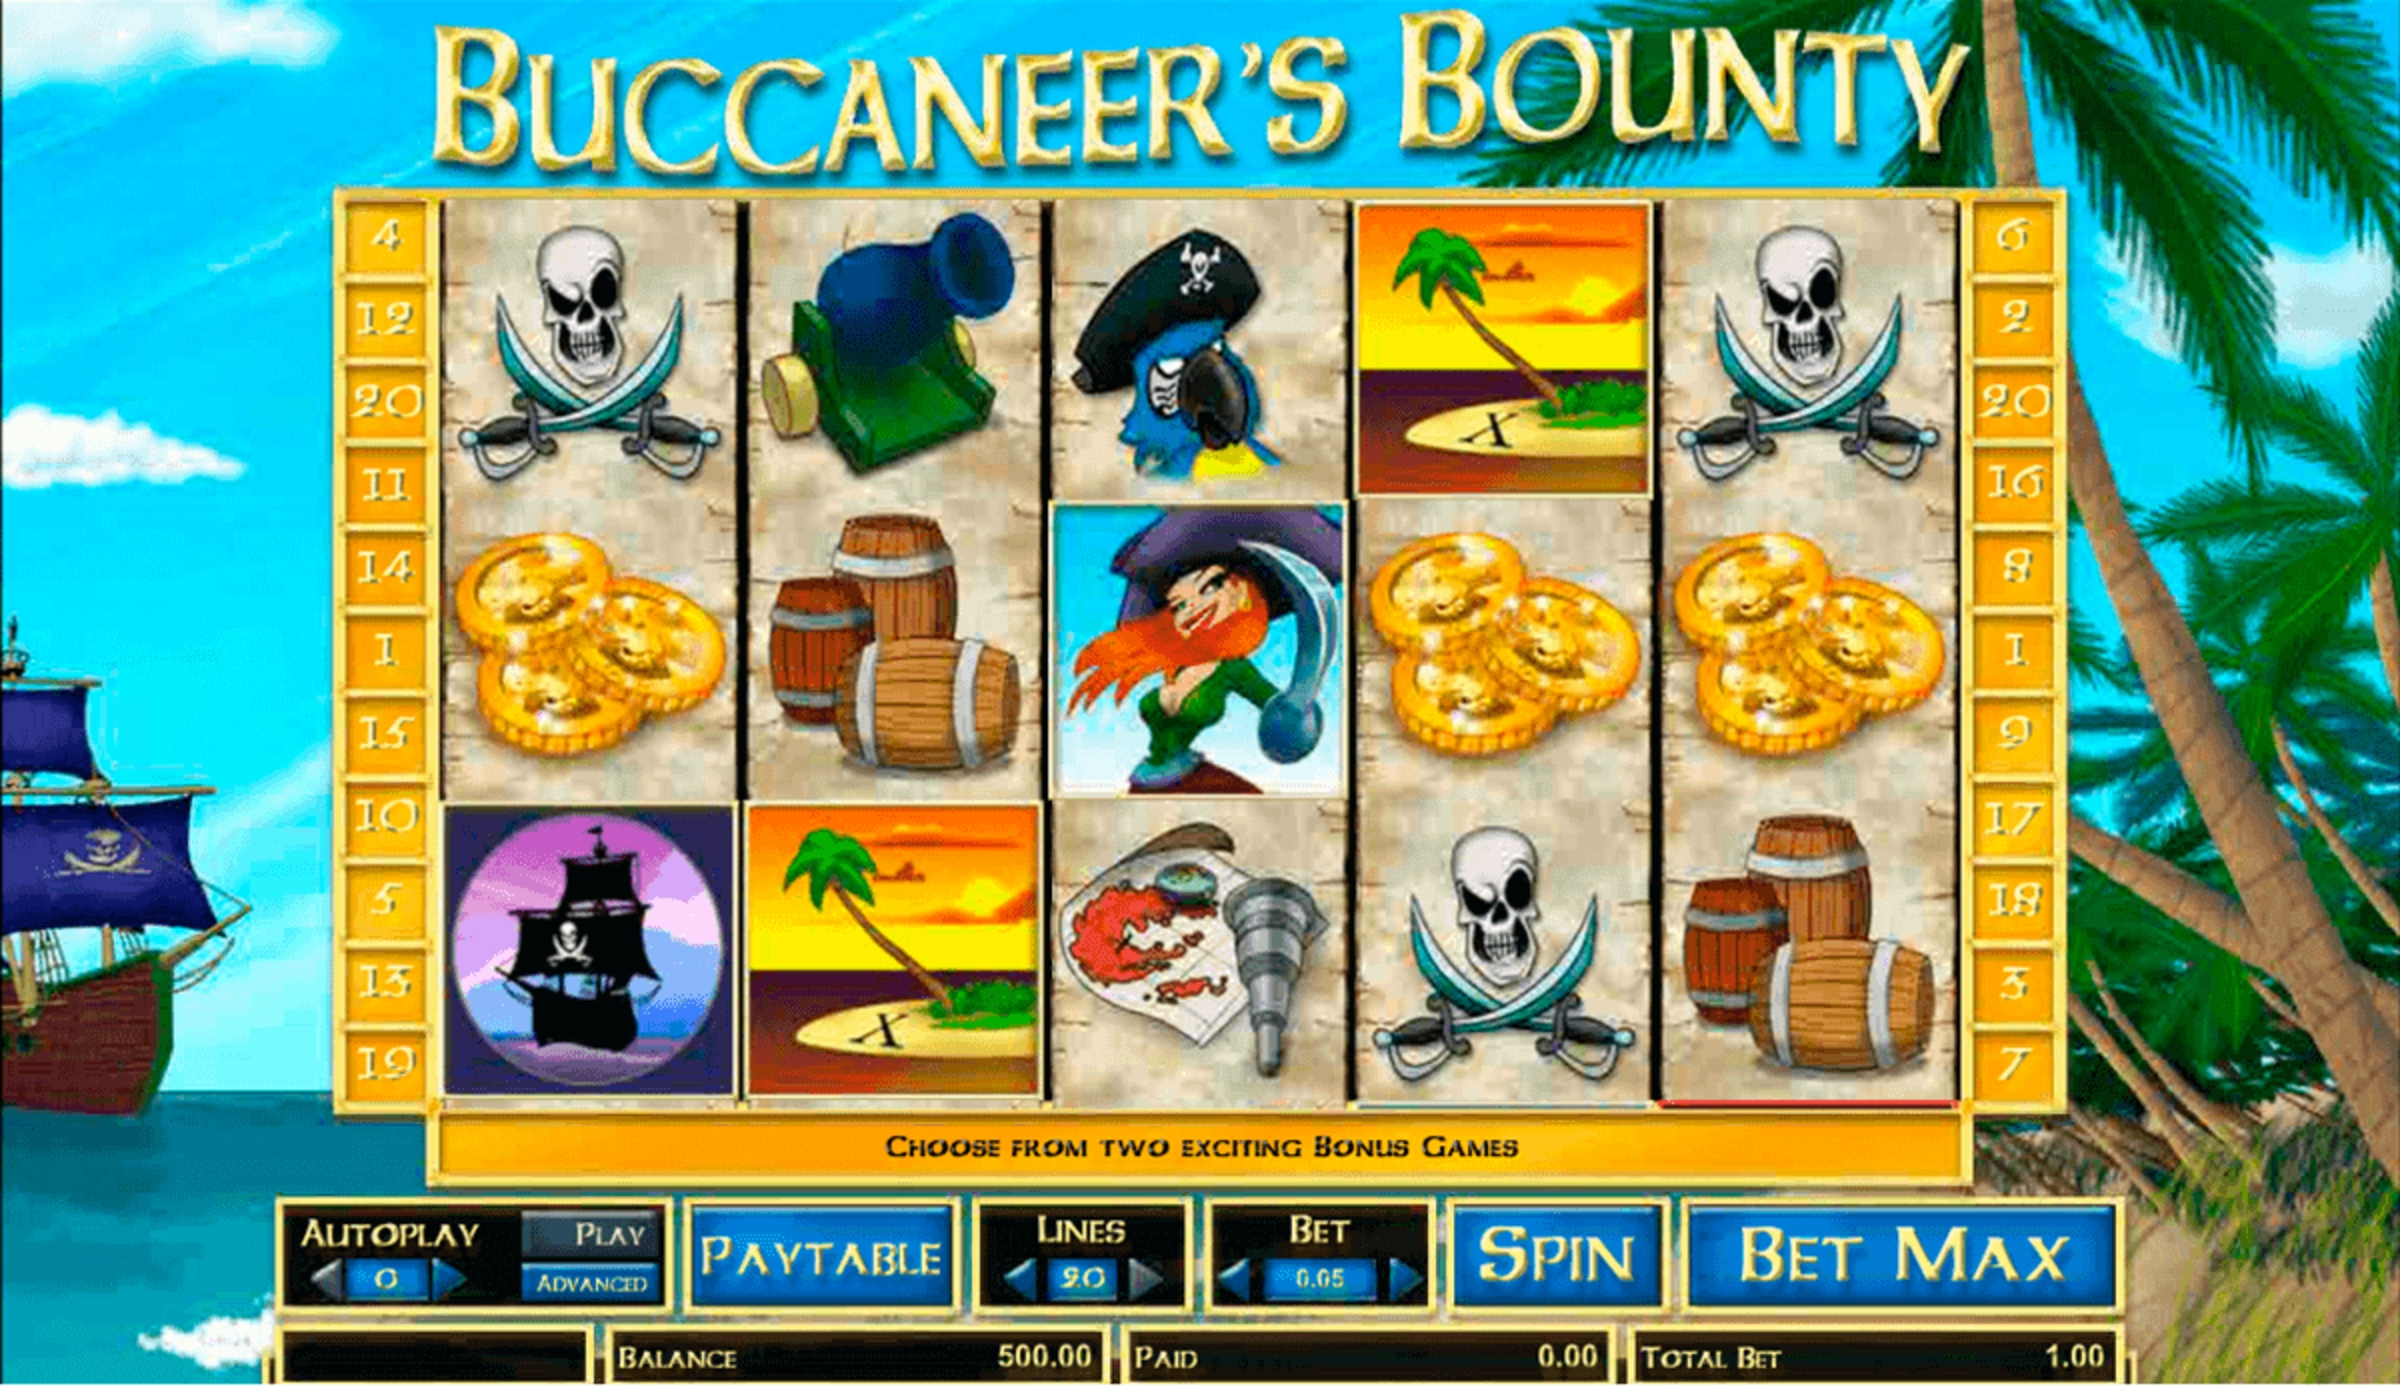 Buccaneer's Bounty demo